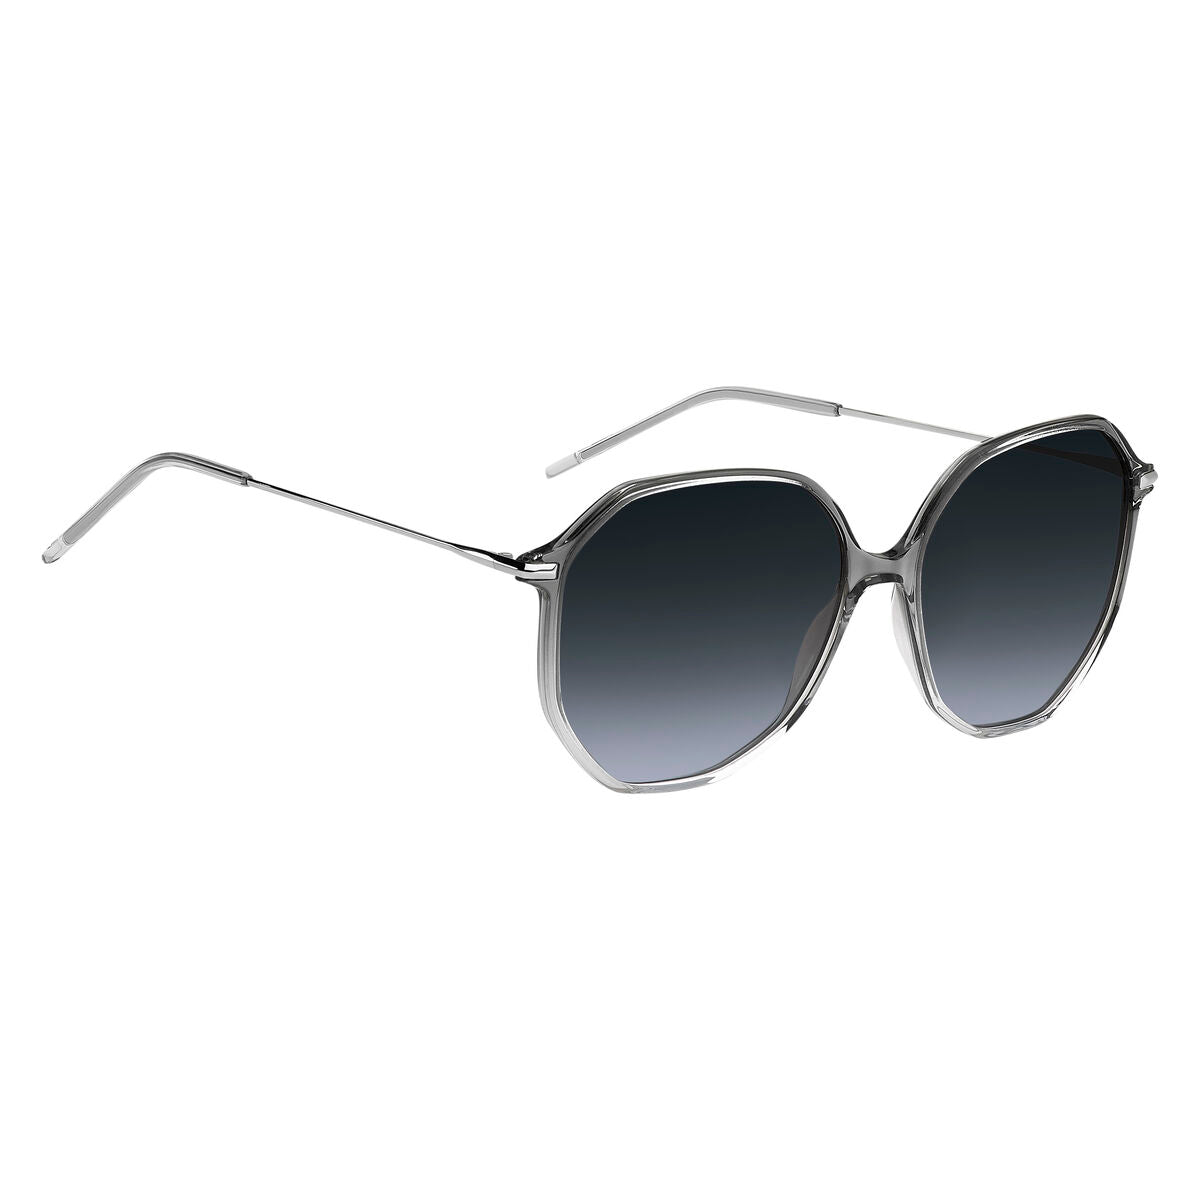 Kaufe Damensonnenbrille Hugo Boss BOSS-1329-S-FS2-9O bei AWK Flagship um € 90.00